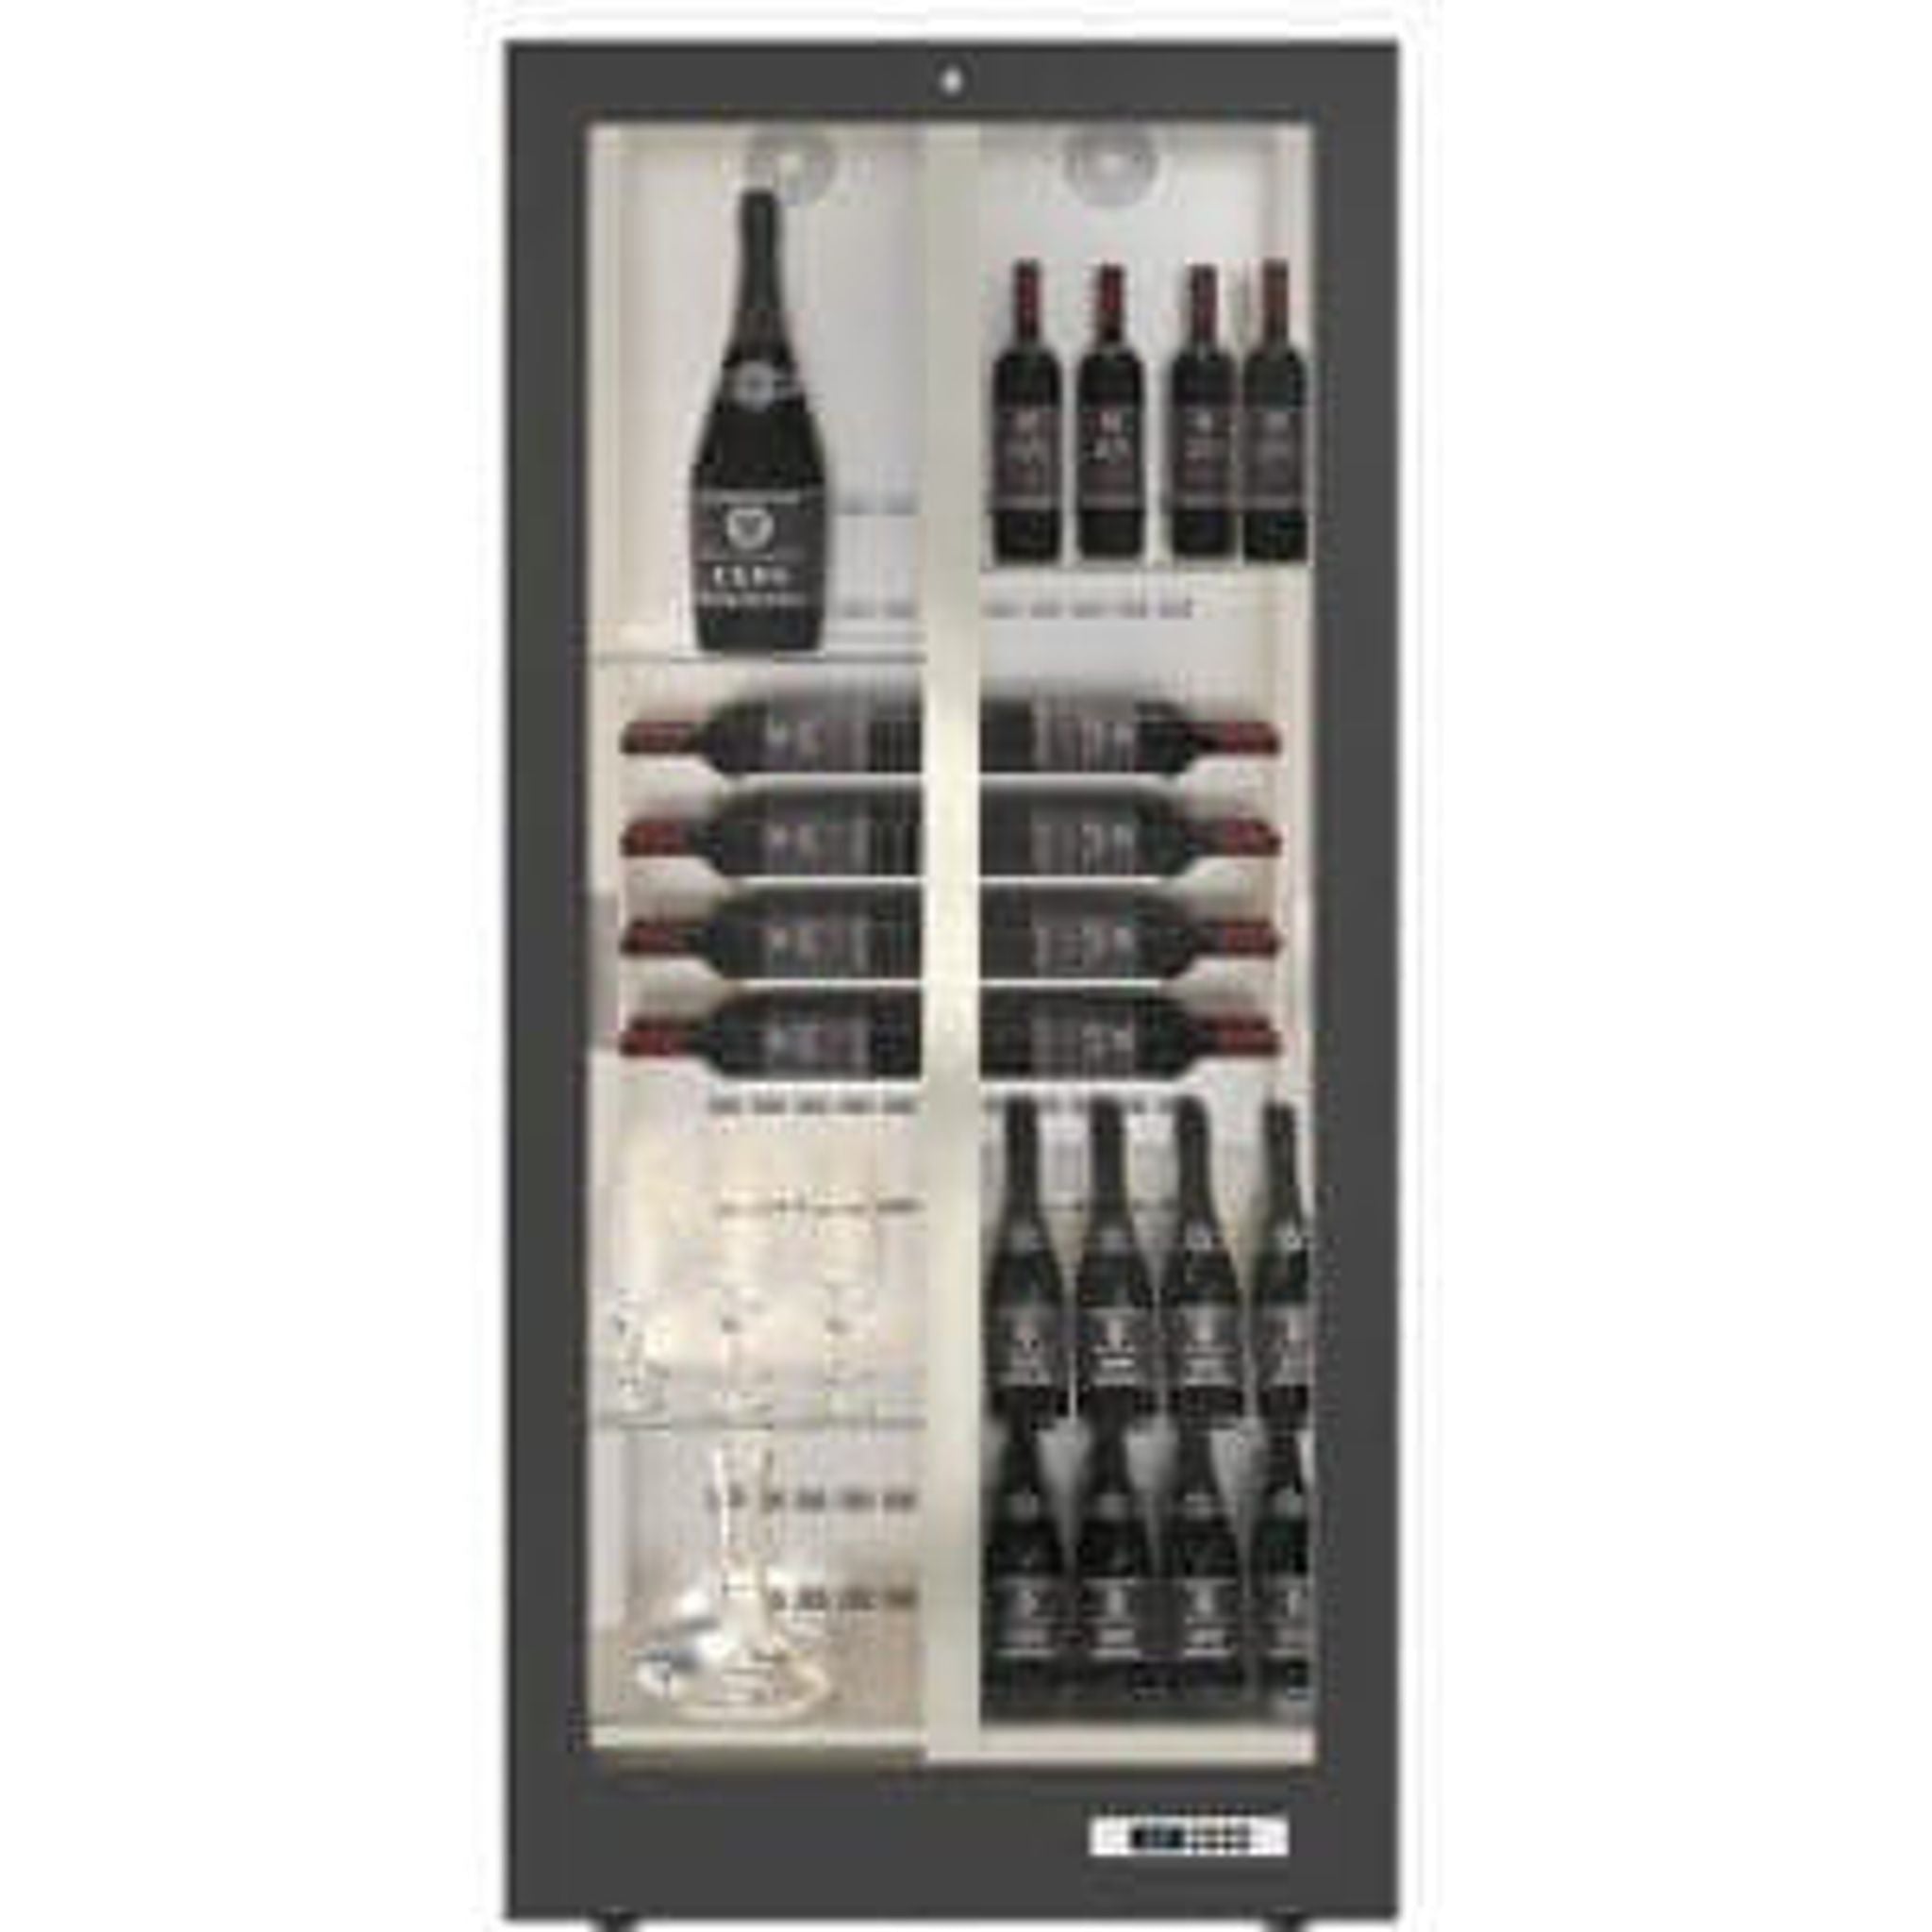 Teca Vino - Wine Wall TV14 - Customisable Shelving - For Restaurant Use